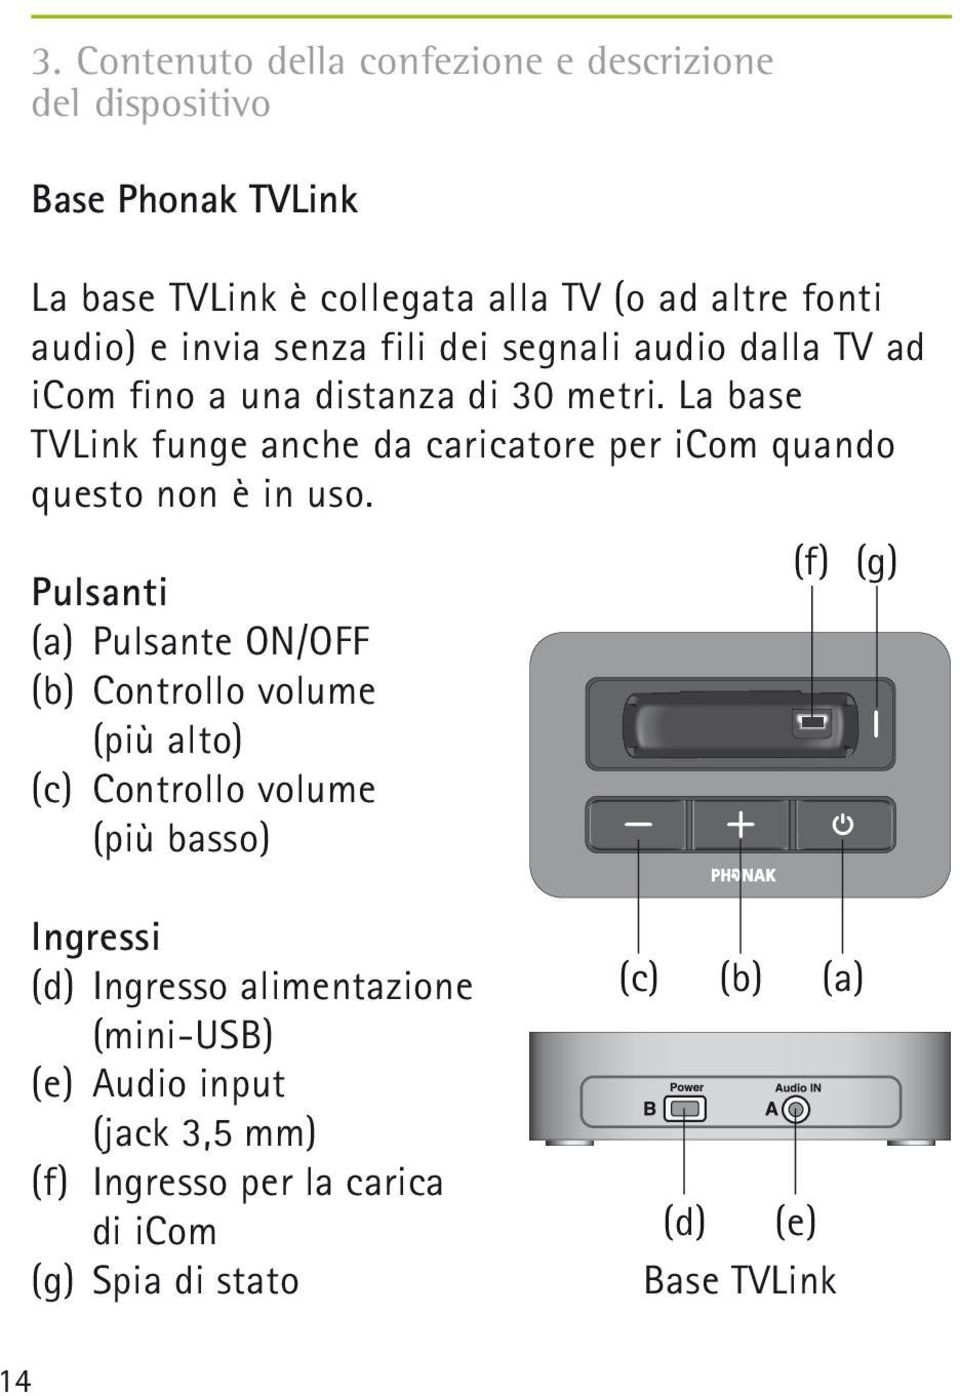 La base TVLink funge anche da caricatore per icom quando questo non è in uso.